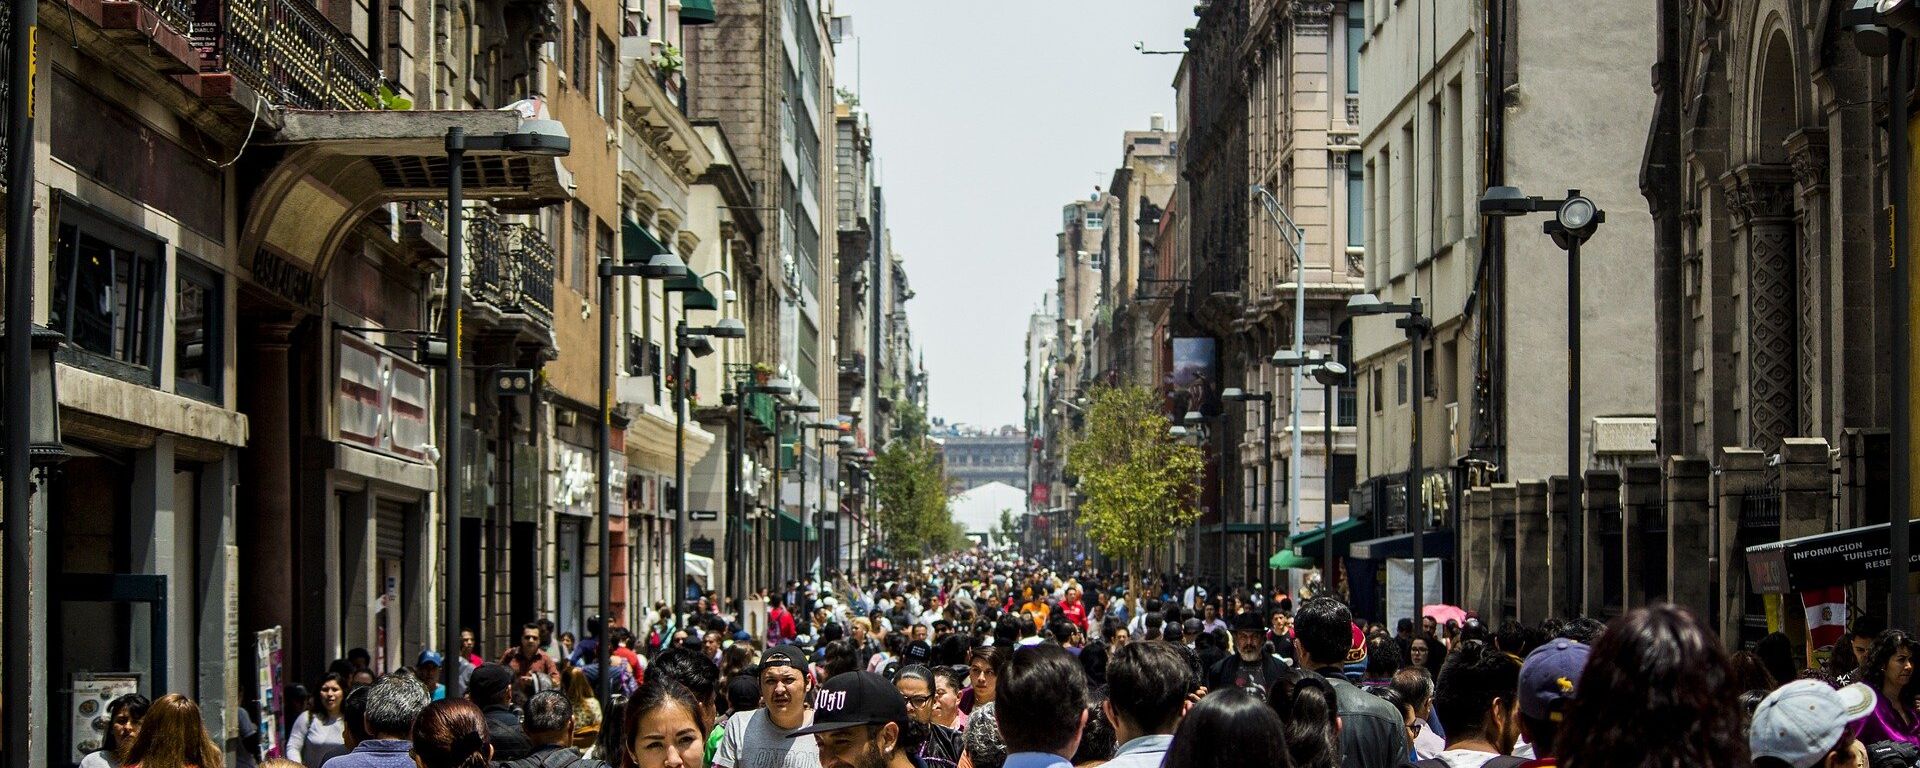 La gente en las calles de Ciudad de México - Sputnik Mundo, 1920, 25.08.2021